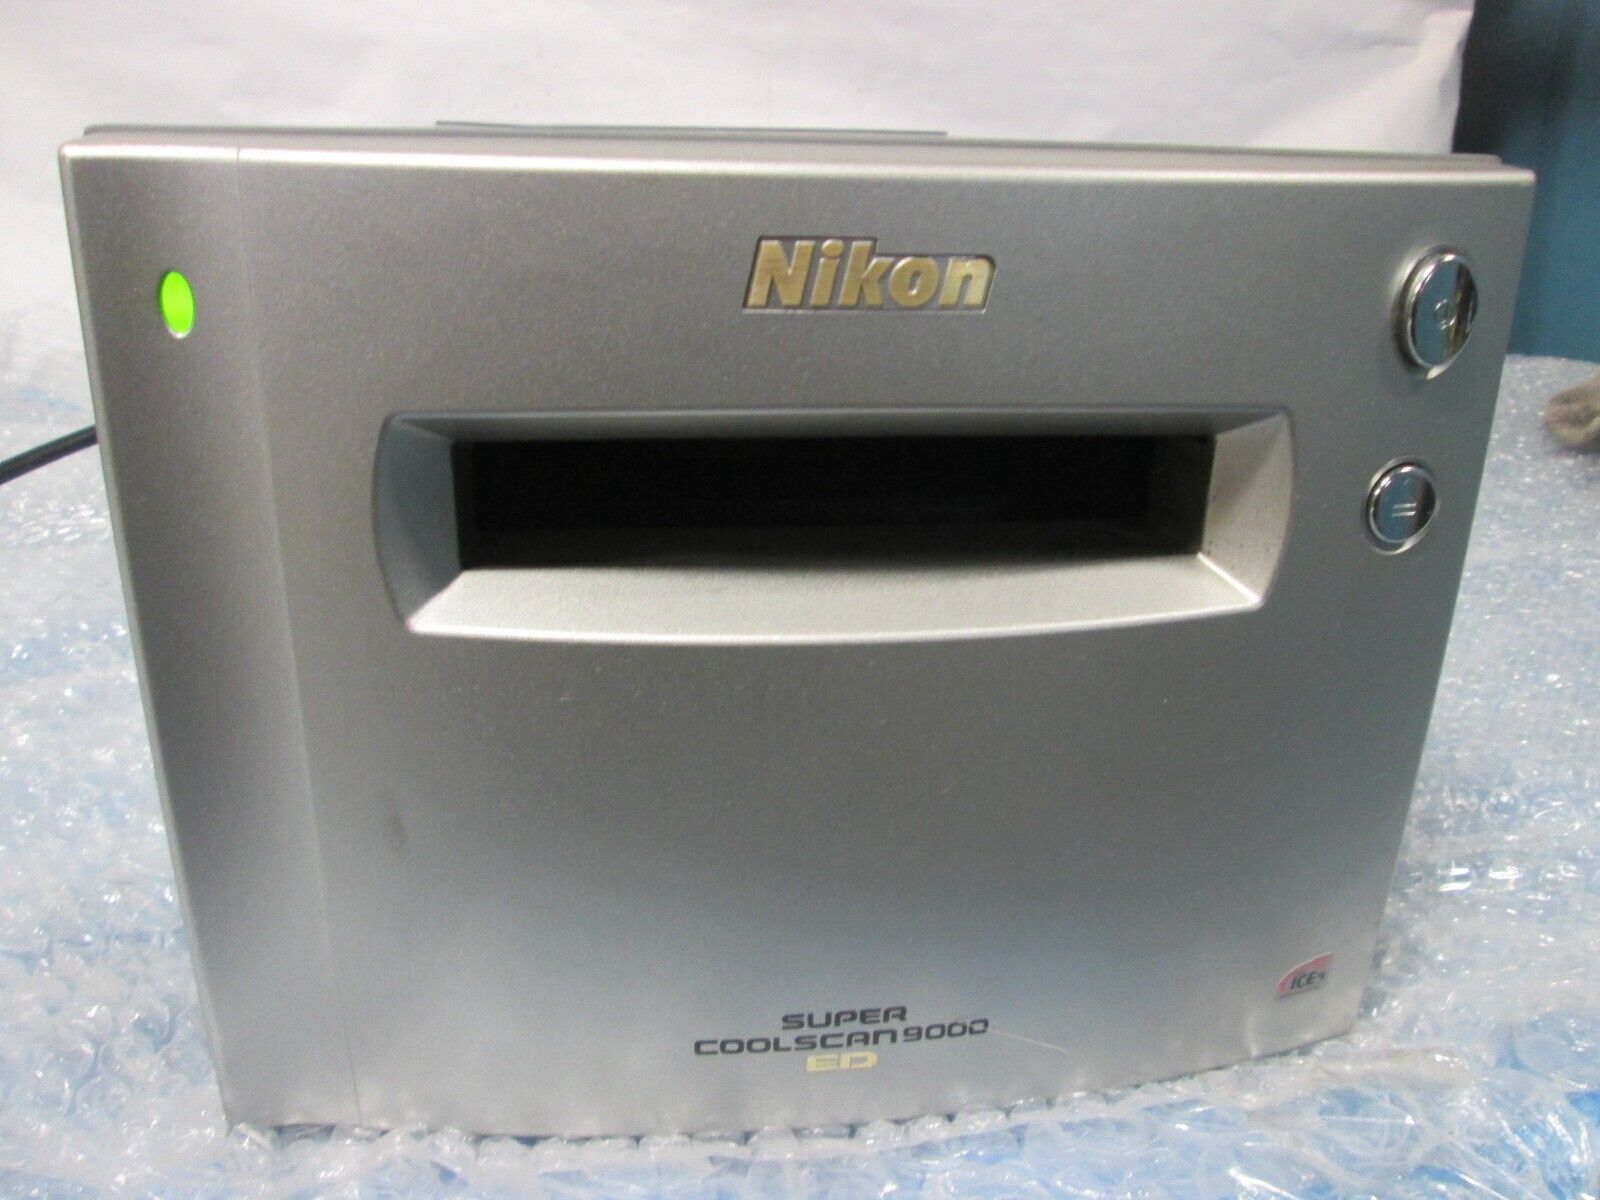 Nikon Super Cool Scan 9000 ED Photo, Slide & Film Scanner